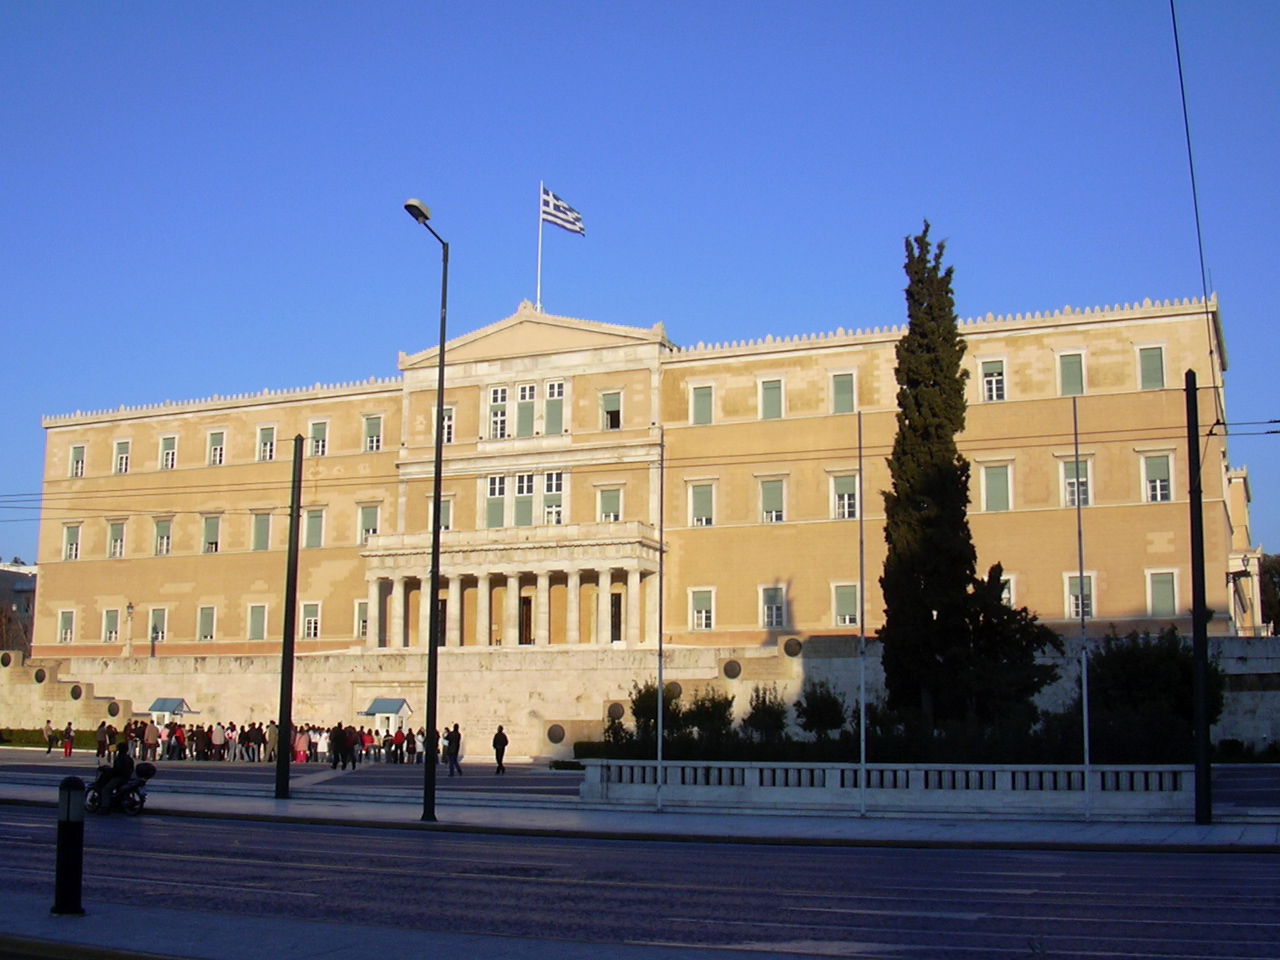 Athen, ehem. Schloss (1836), heute Parlament